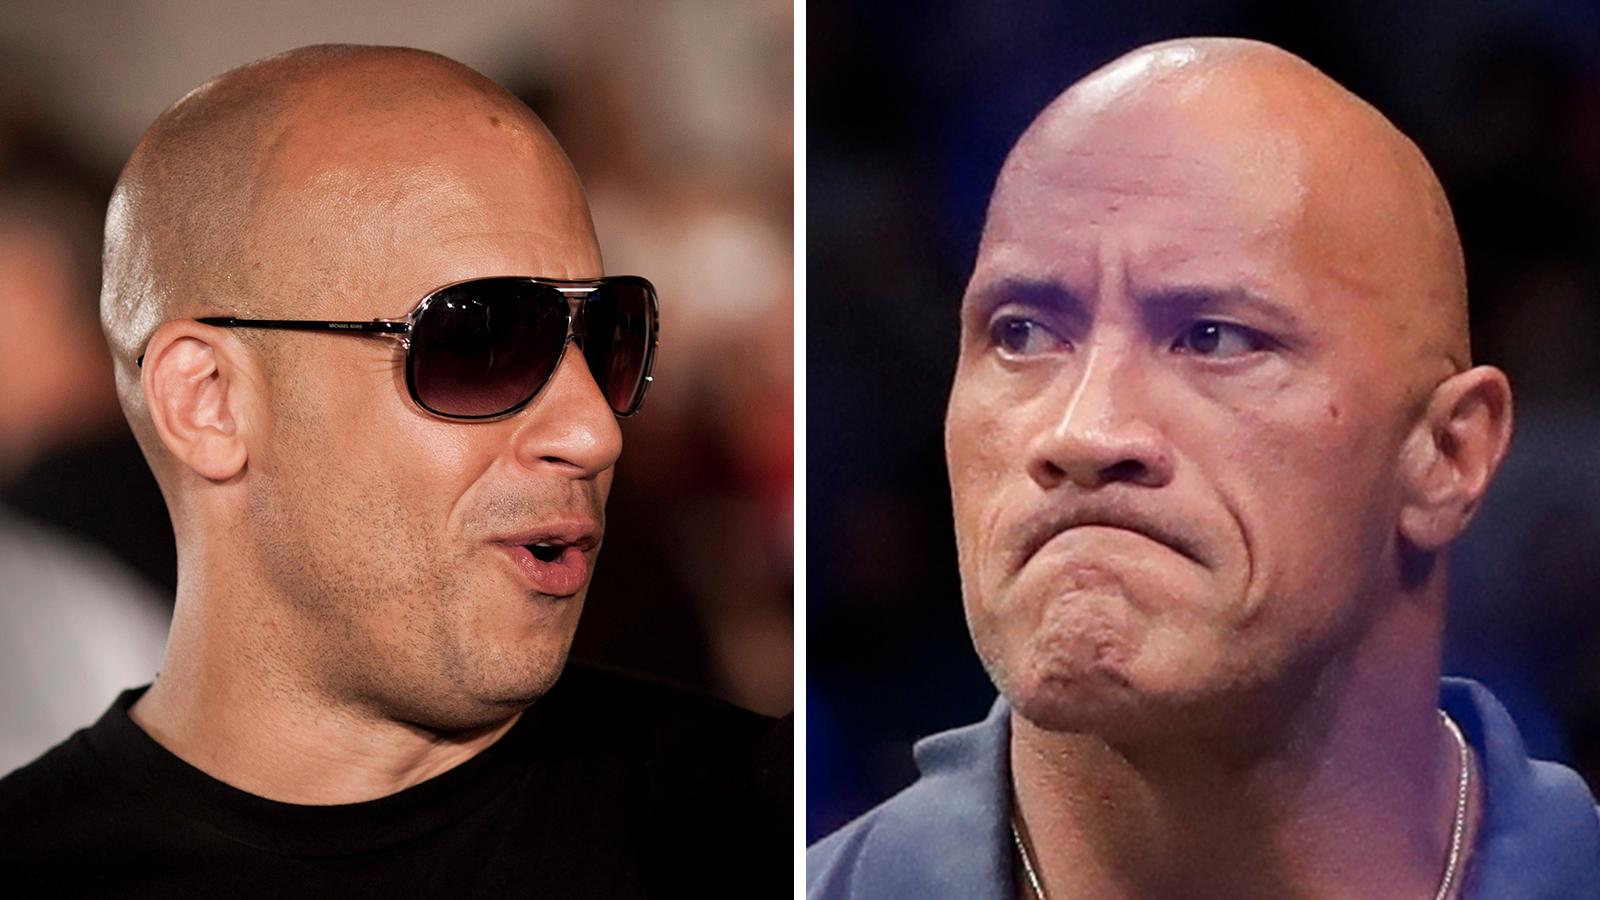 Dwayne Johnson ilska mot Vin Diesel efter ”Fast and furious”-bråket: ”Manipulativ”